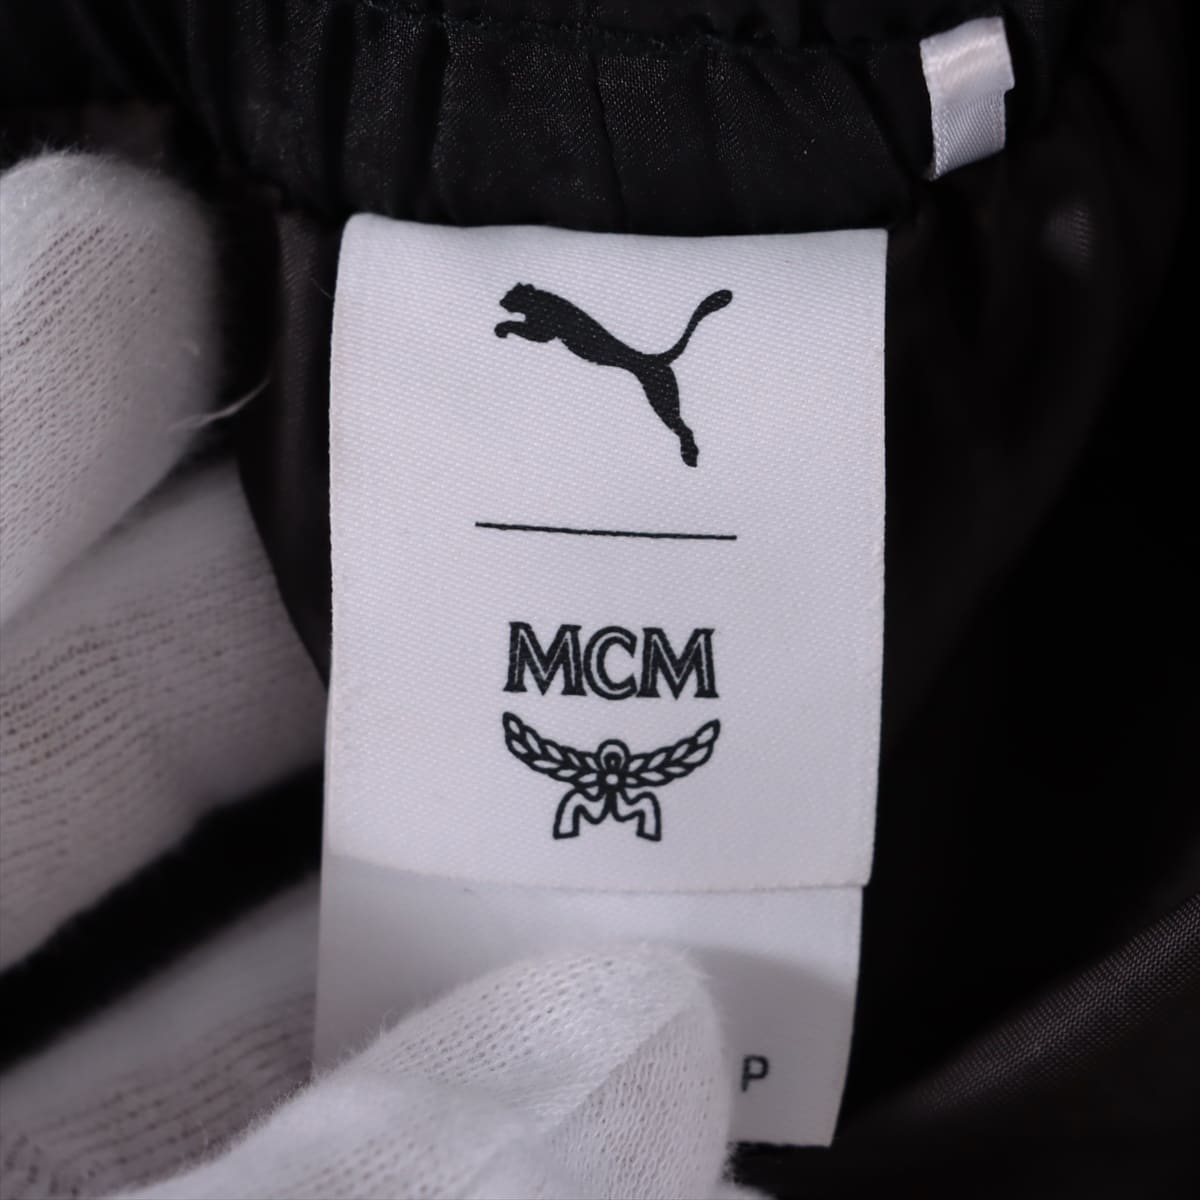 MCM ナイロン トラックパンツ S メンズ ブラック  pumaコラボ 品質タグ一部カット